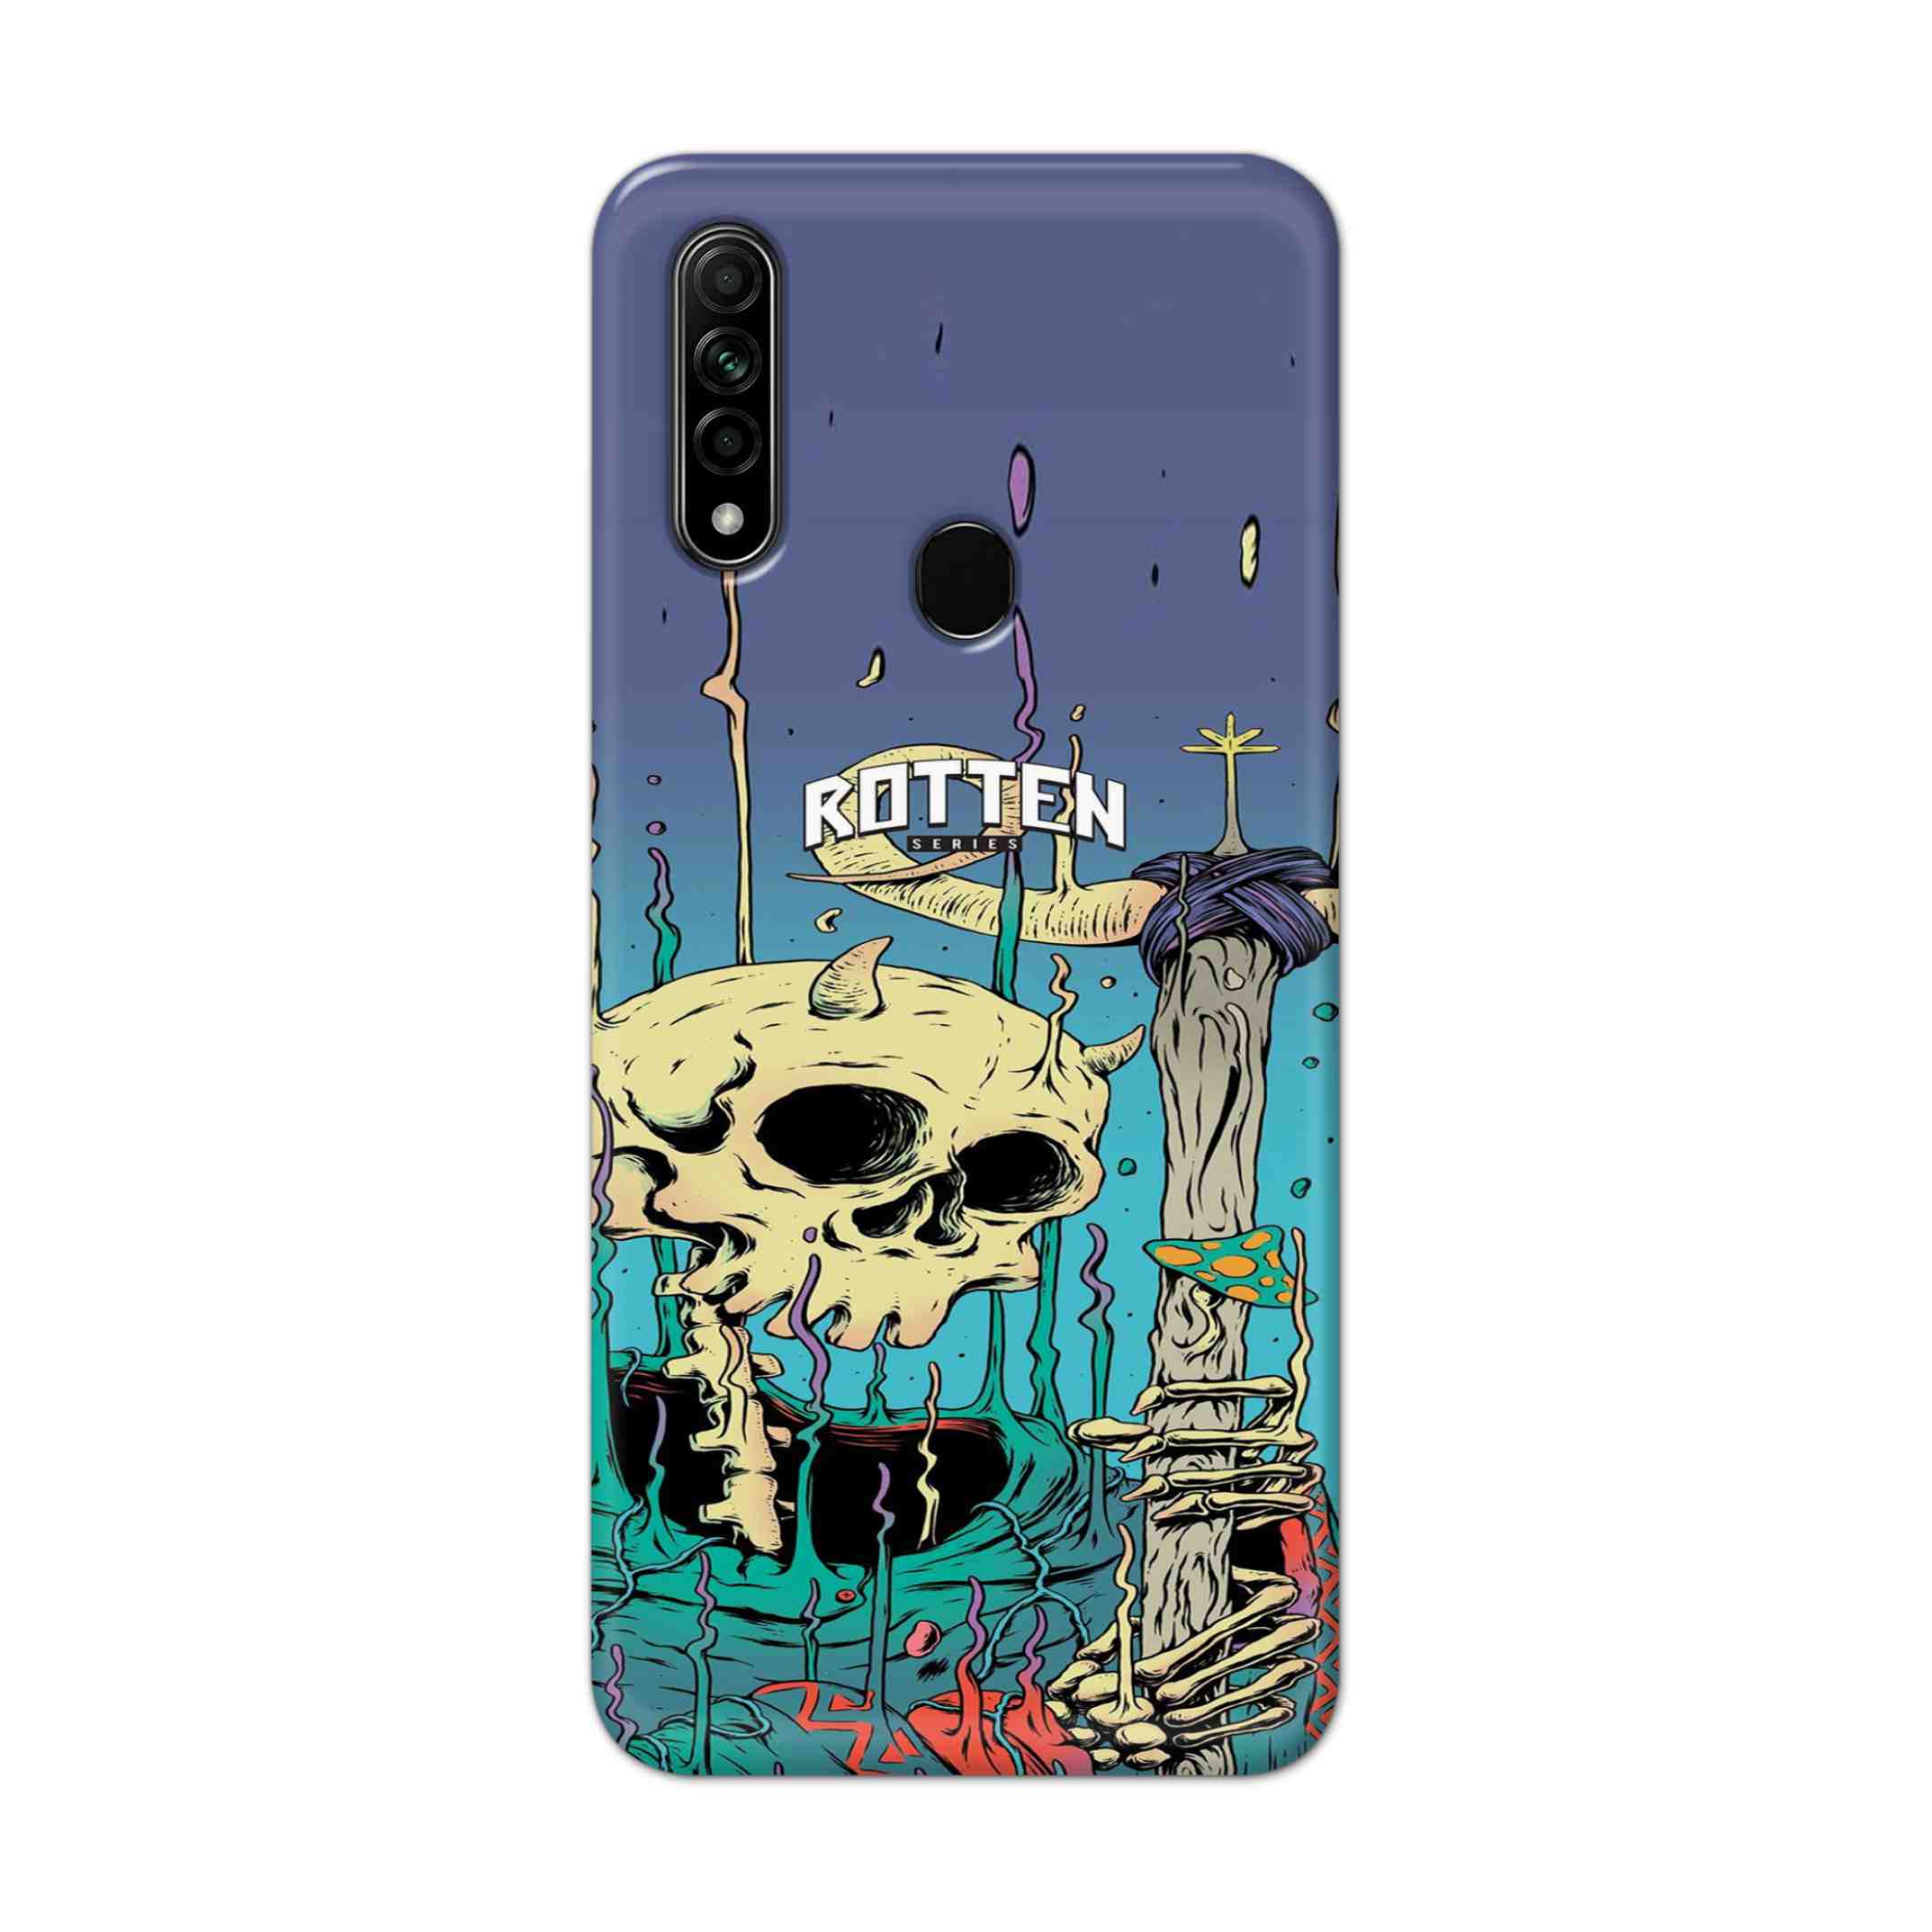 Buy Skull Hard Back Mobile Phone Case Cover For Oppo A31 (2020) Online